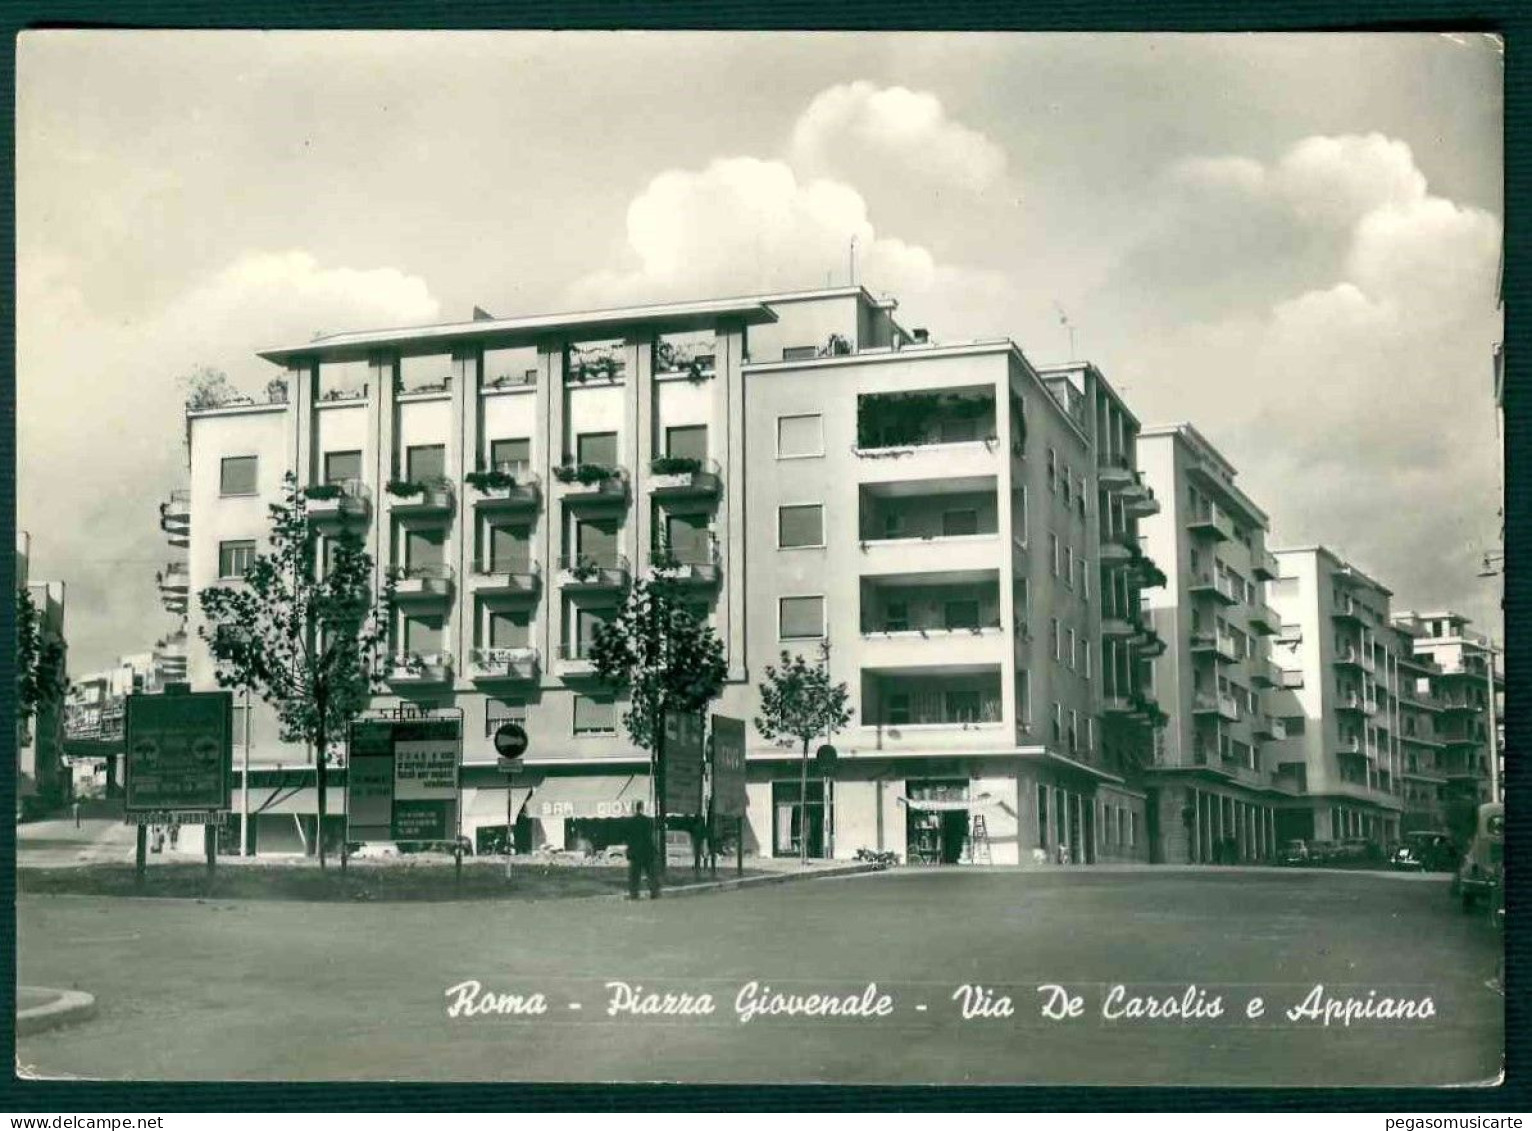 BG015 - ROMA PIAZZA GIOVENALE - VIA DE CAROLIS E APPIANO - 1950 CIRCA - ANIMATA - Other Monuments & Buildings